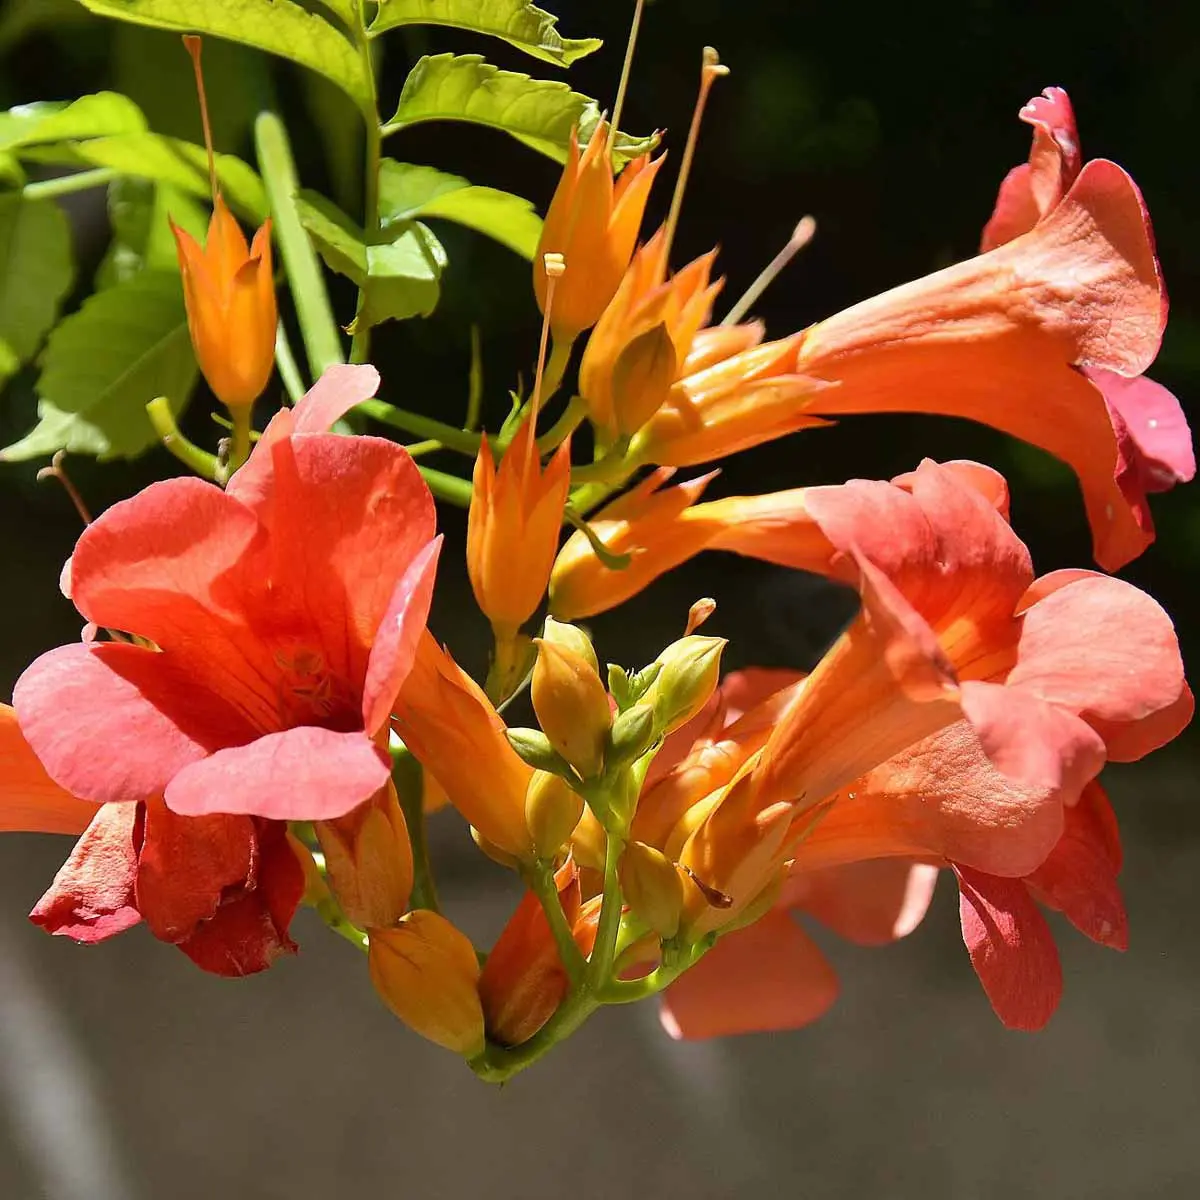 Pianta rampicante fiori trombetta: bignonia